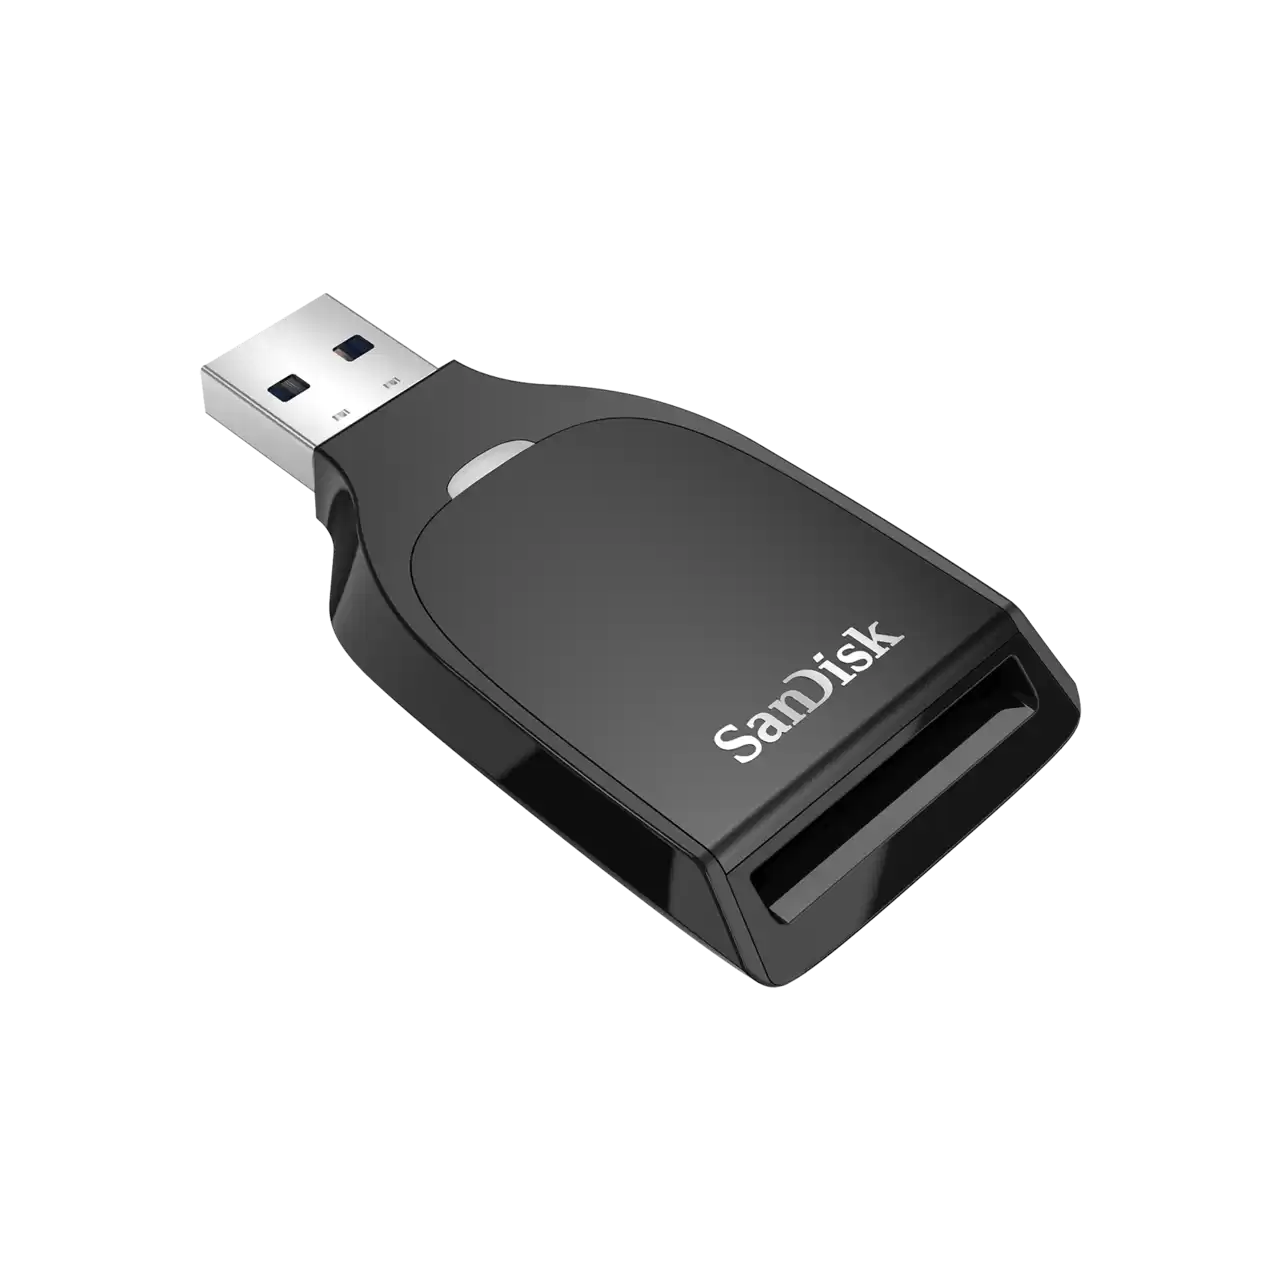   Sandisk SD UHS-I USB